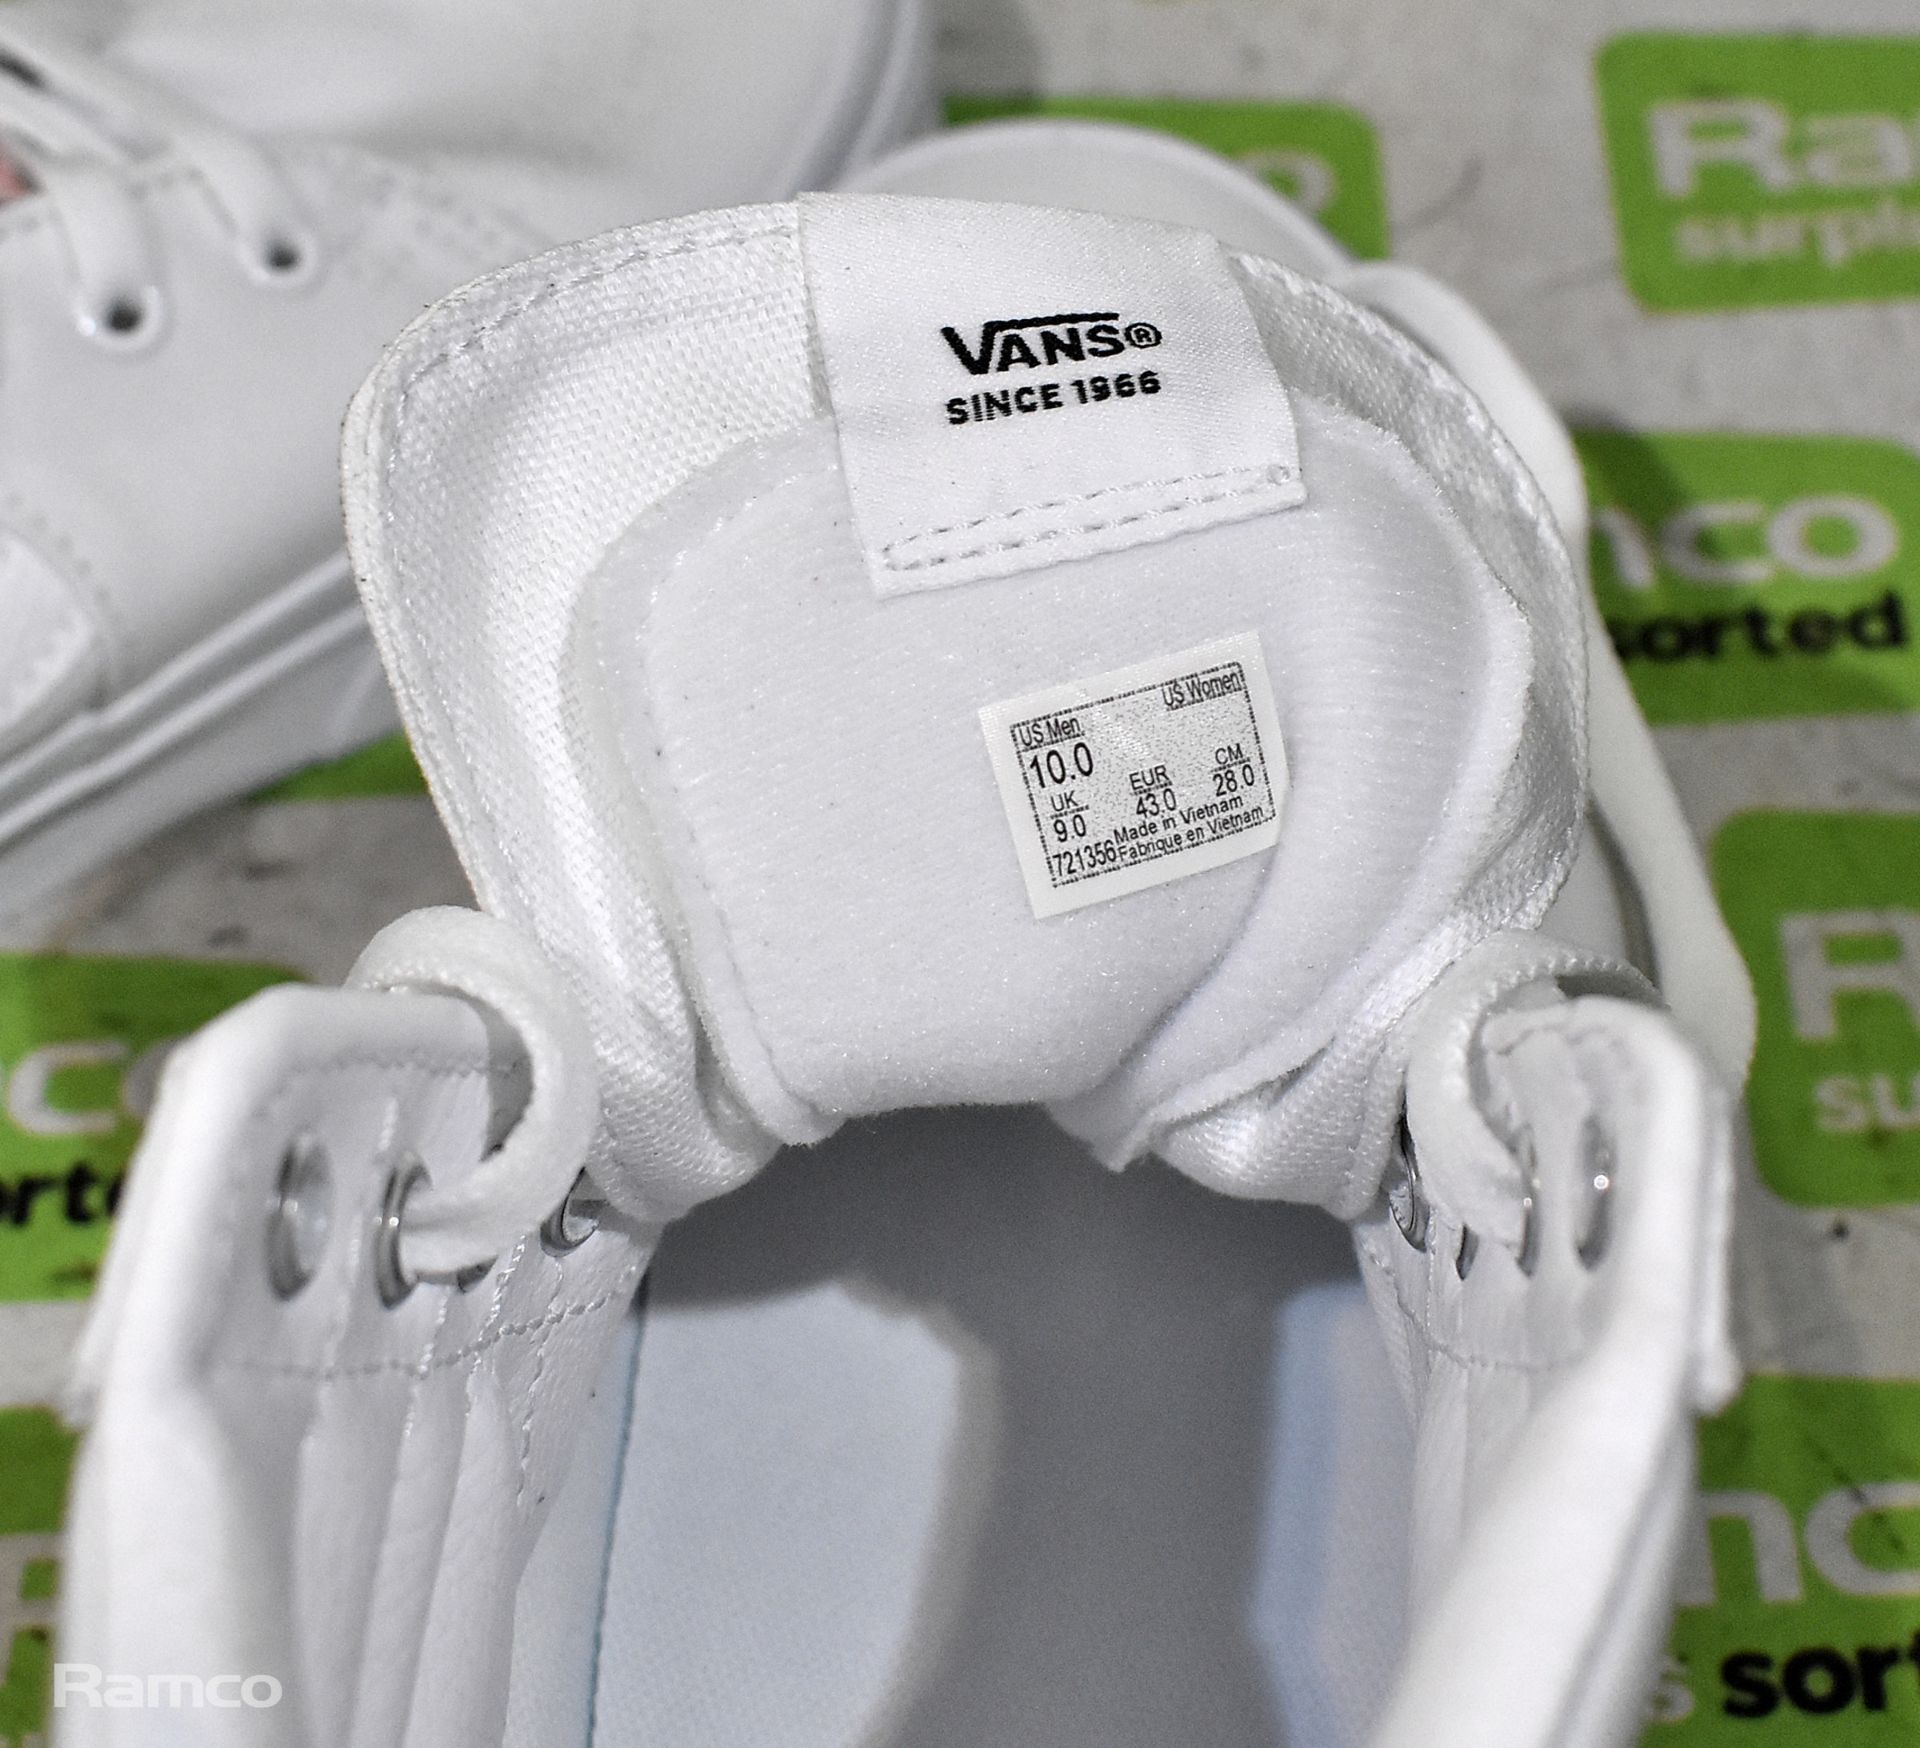 VANS Sk8-Hi white high top trainers - UK size 9 - not worn, still in box - Bild 5 aus 7